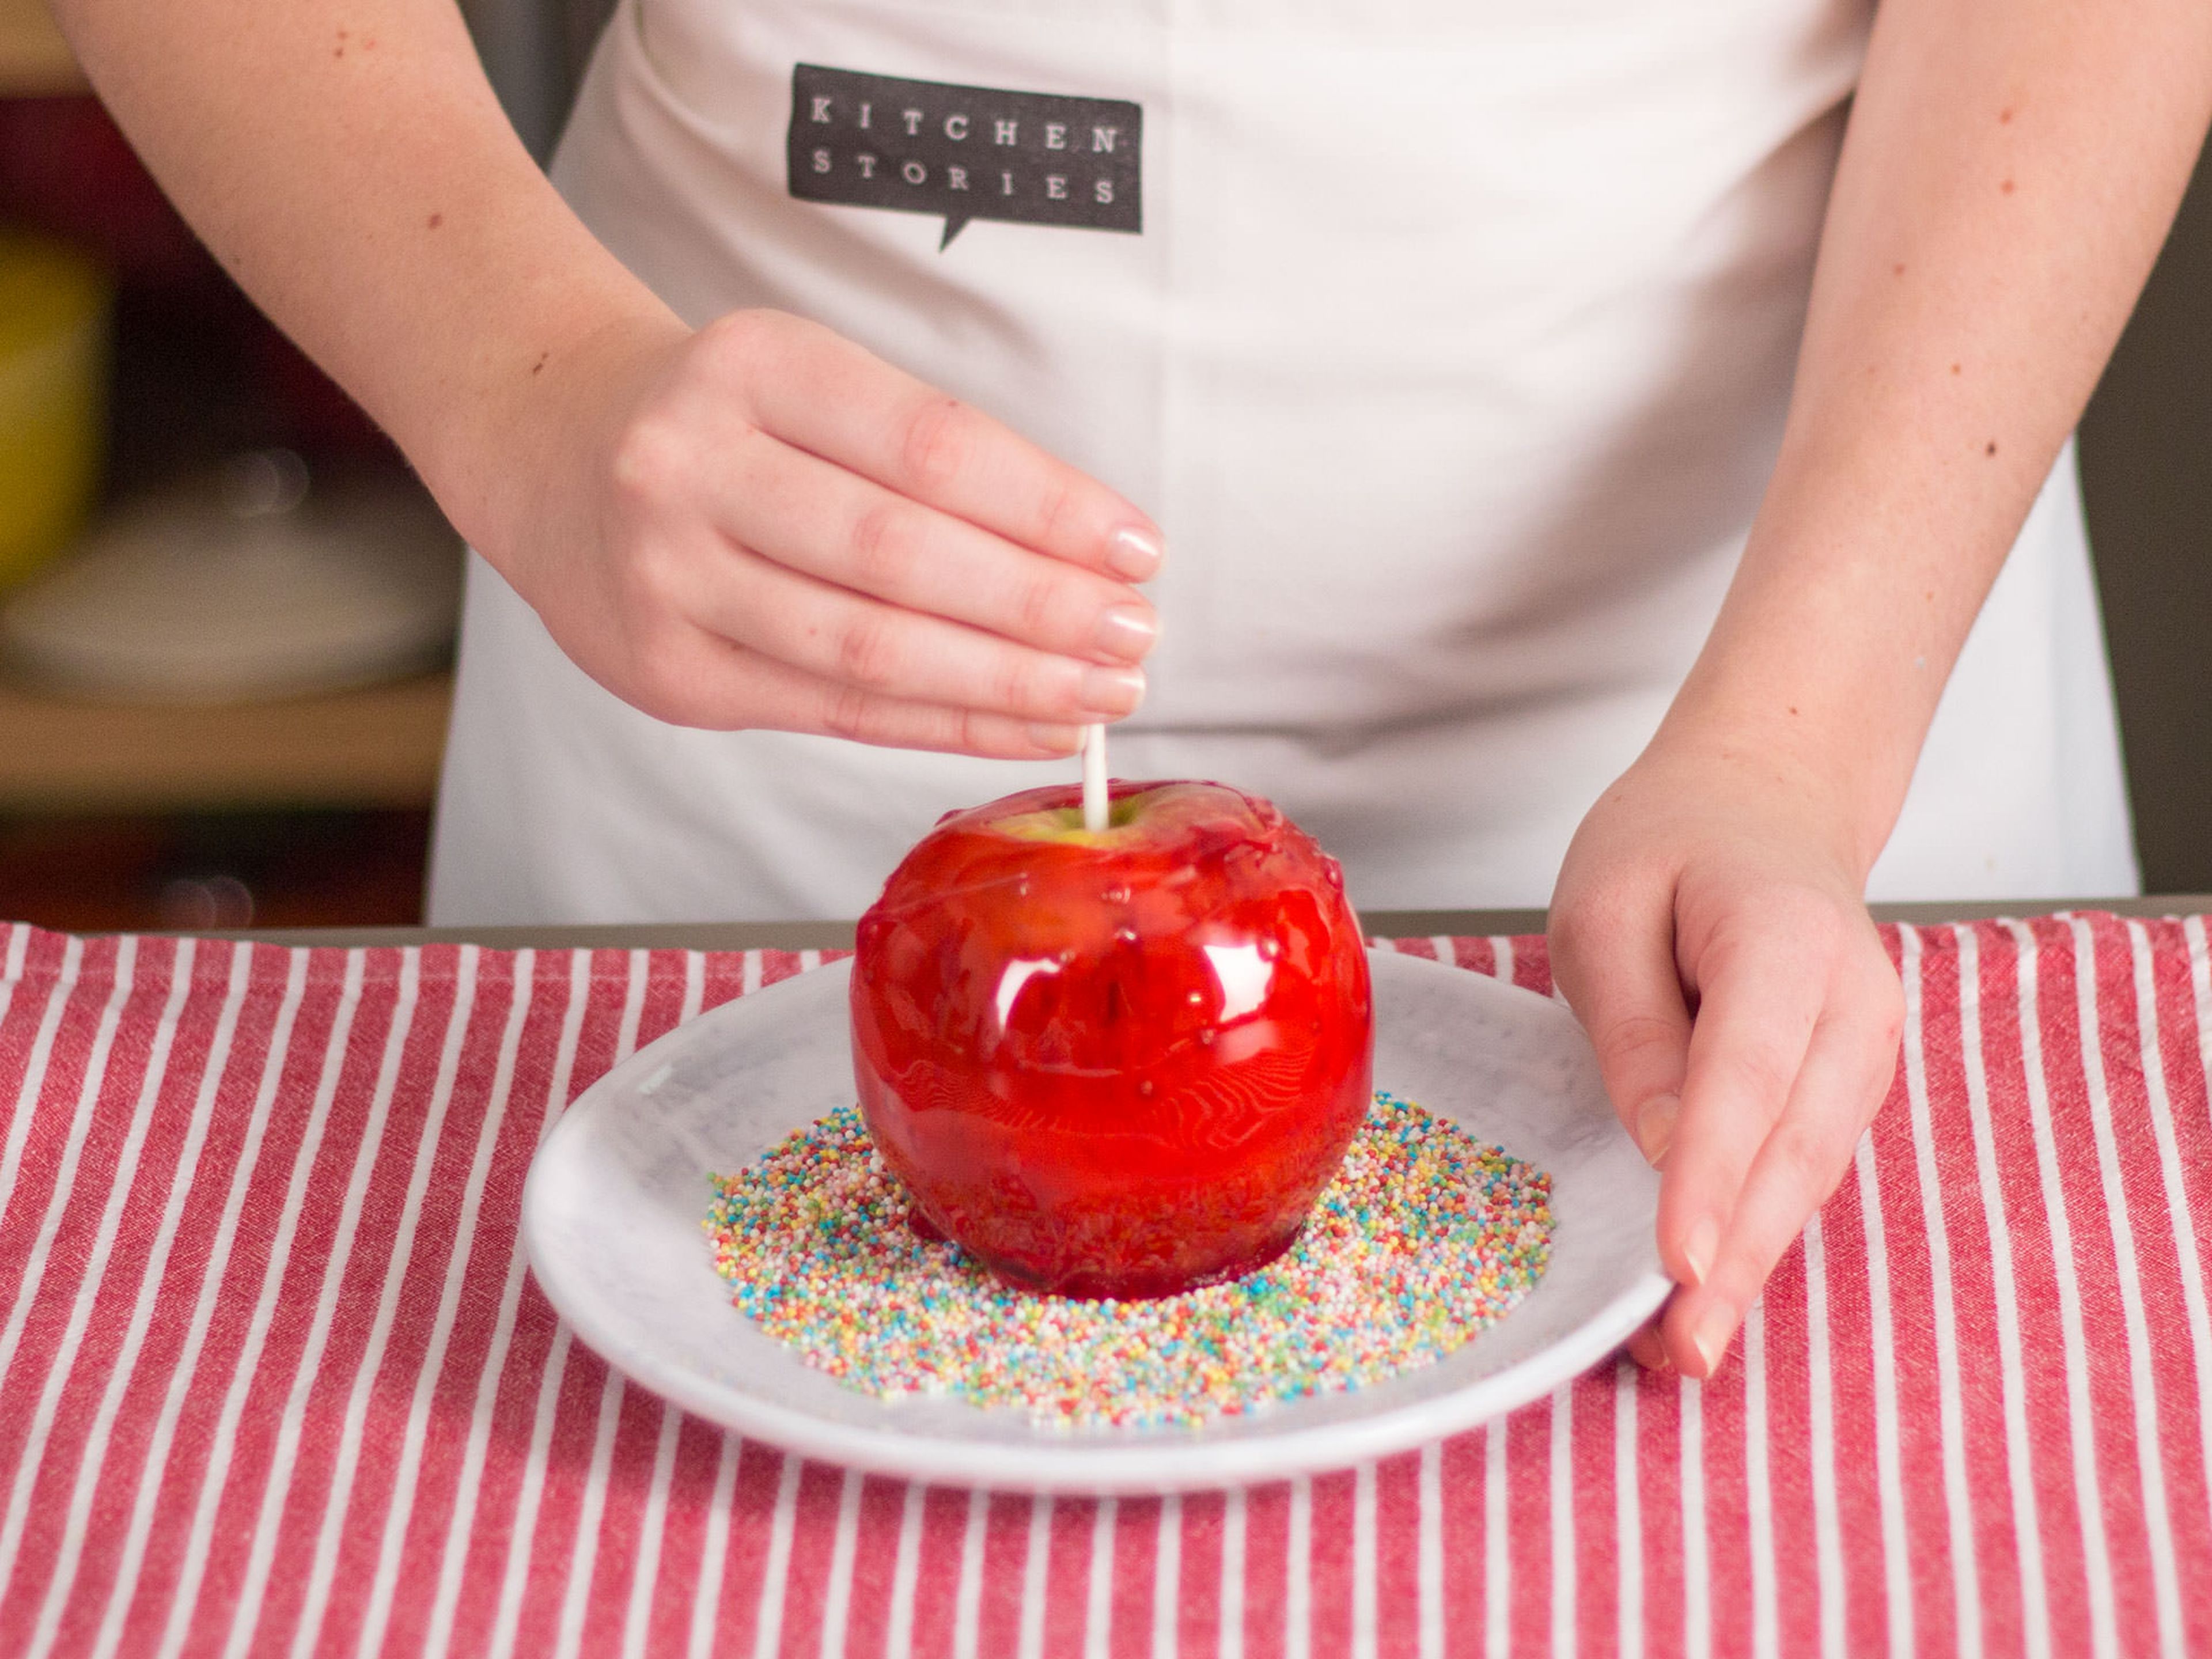 Wenn gewünscht, Äpfel in Streuseln wälzen. Auf ein mit Backpapier ausgelegtes Backblech geben und abkühlen lassen. Guten Appetit!